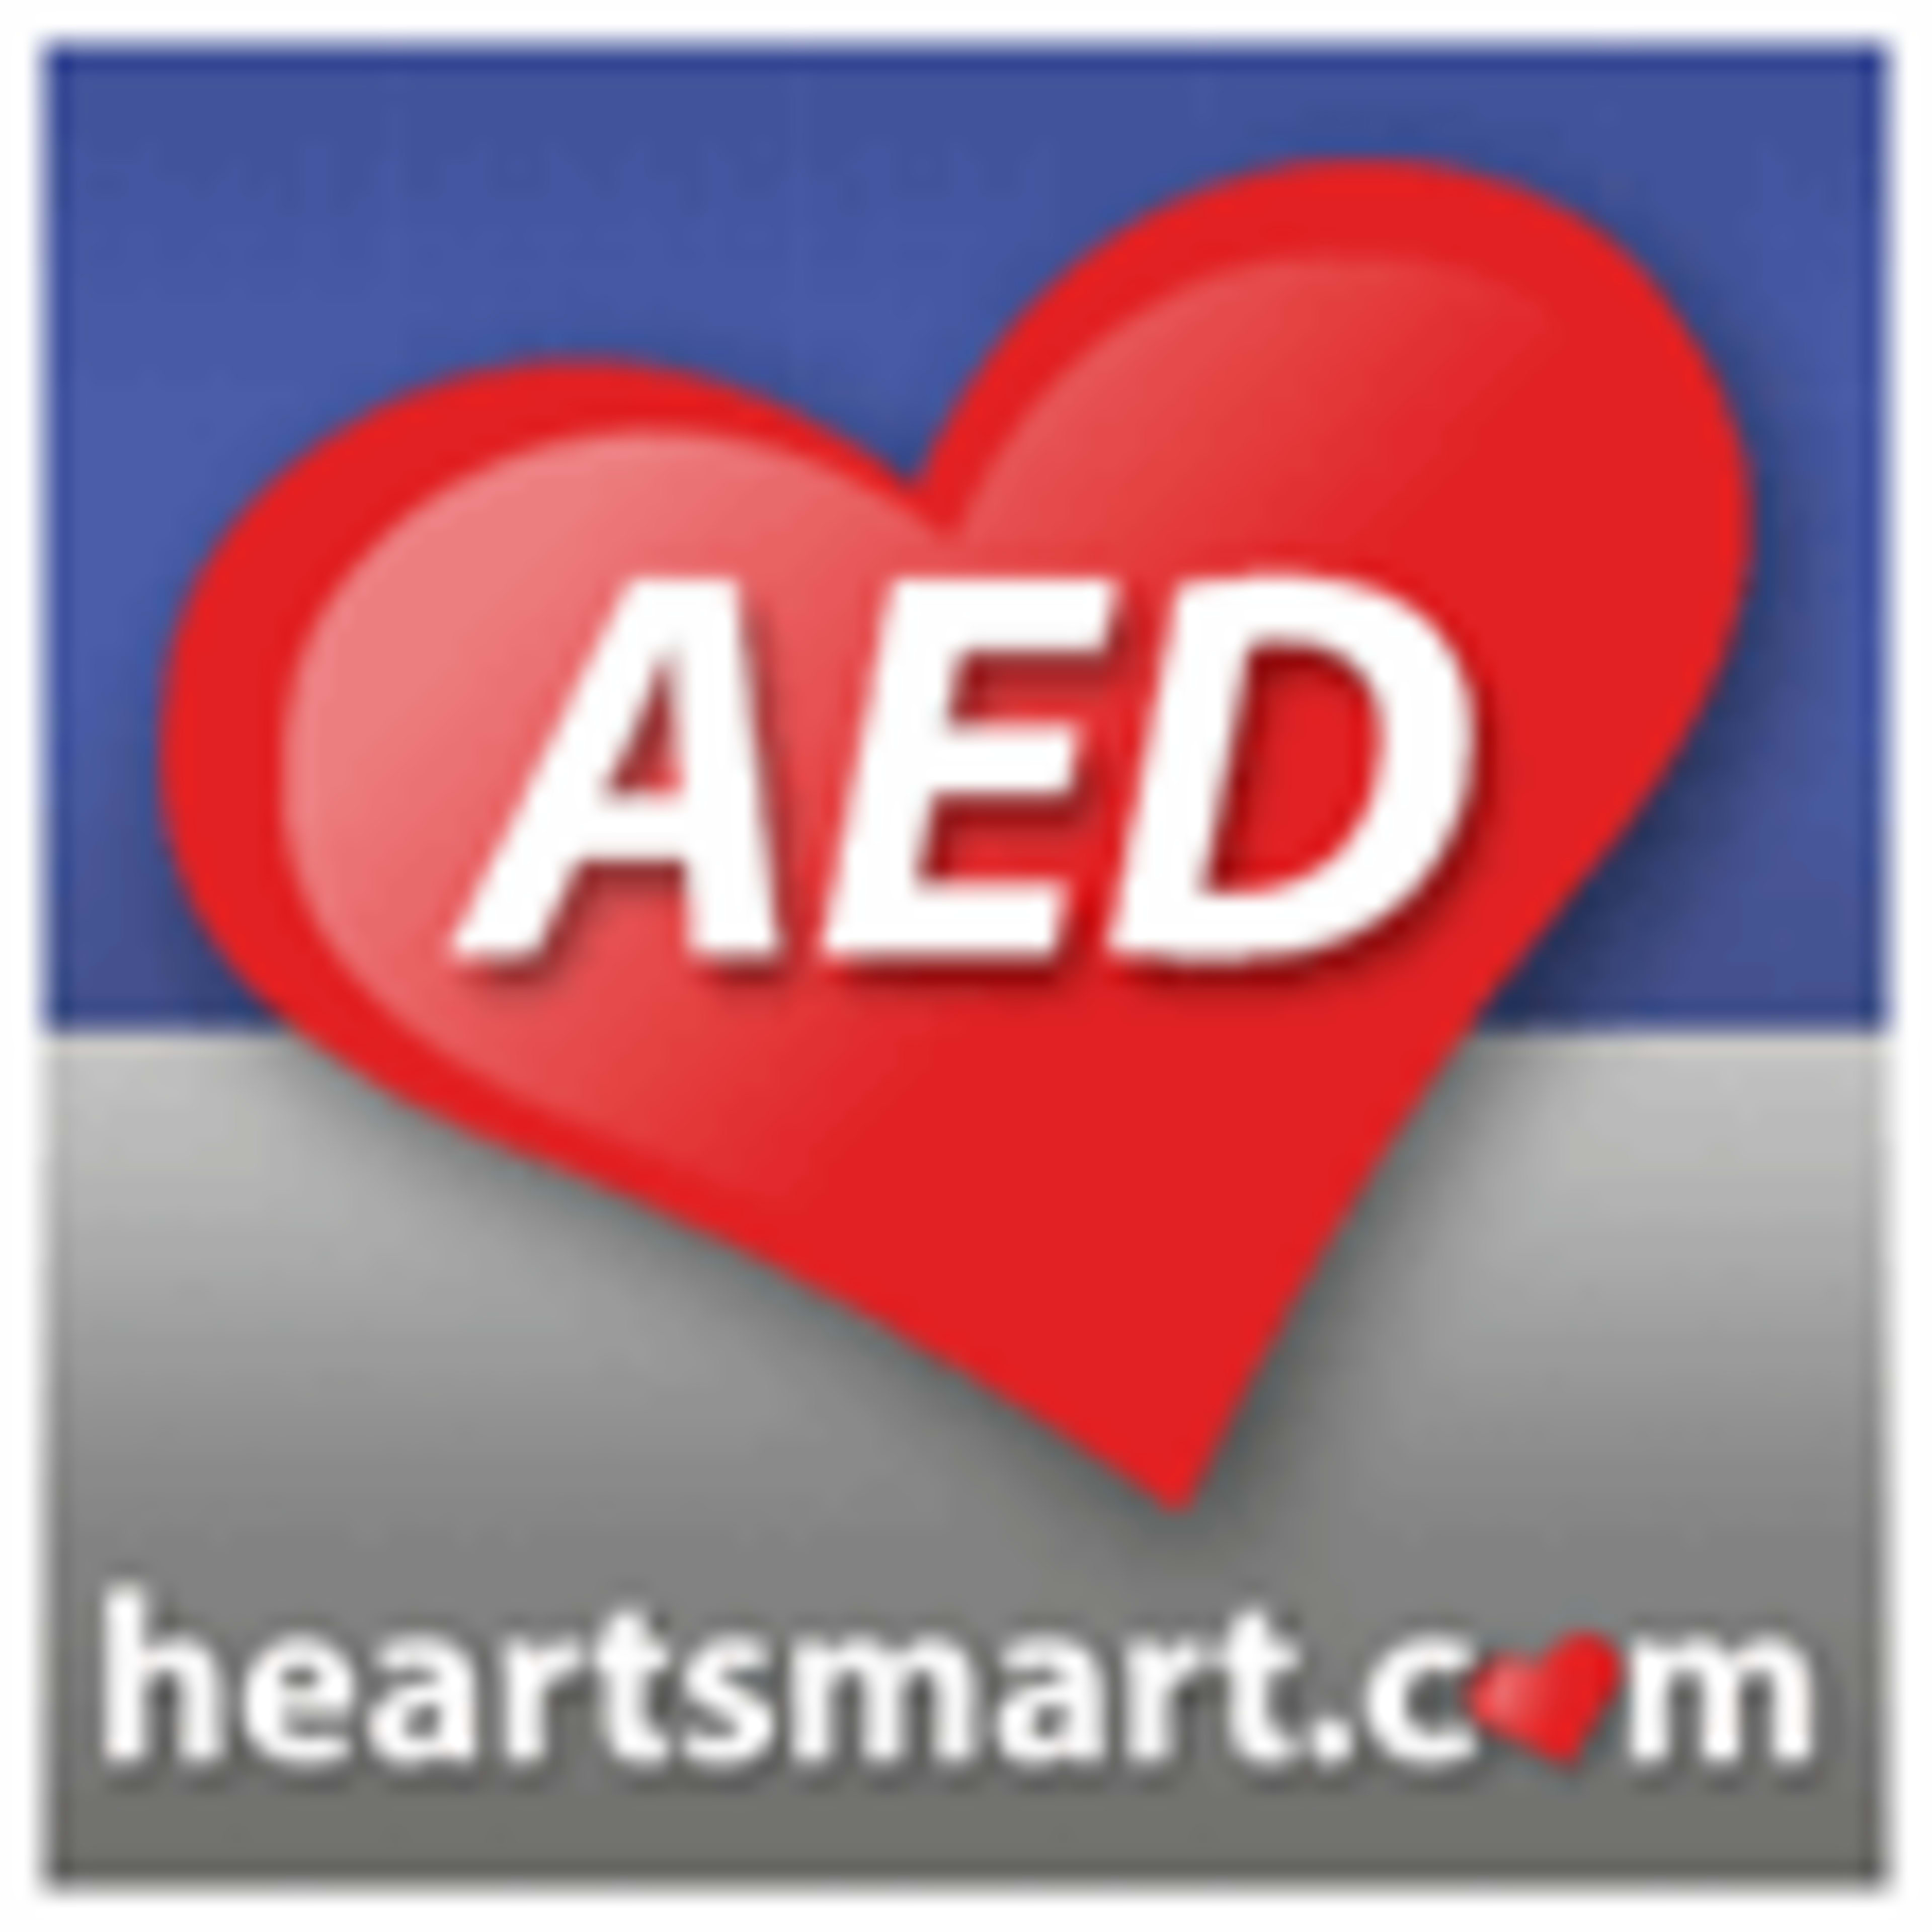 HeartSmart.com Code